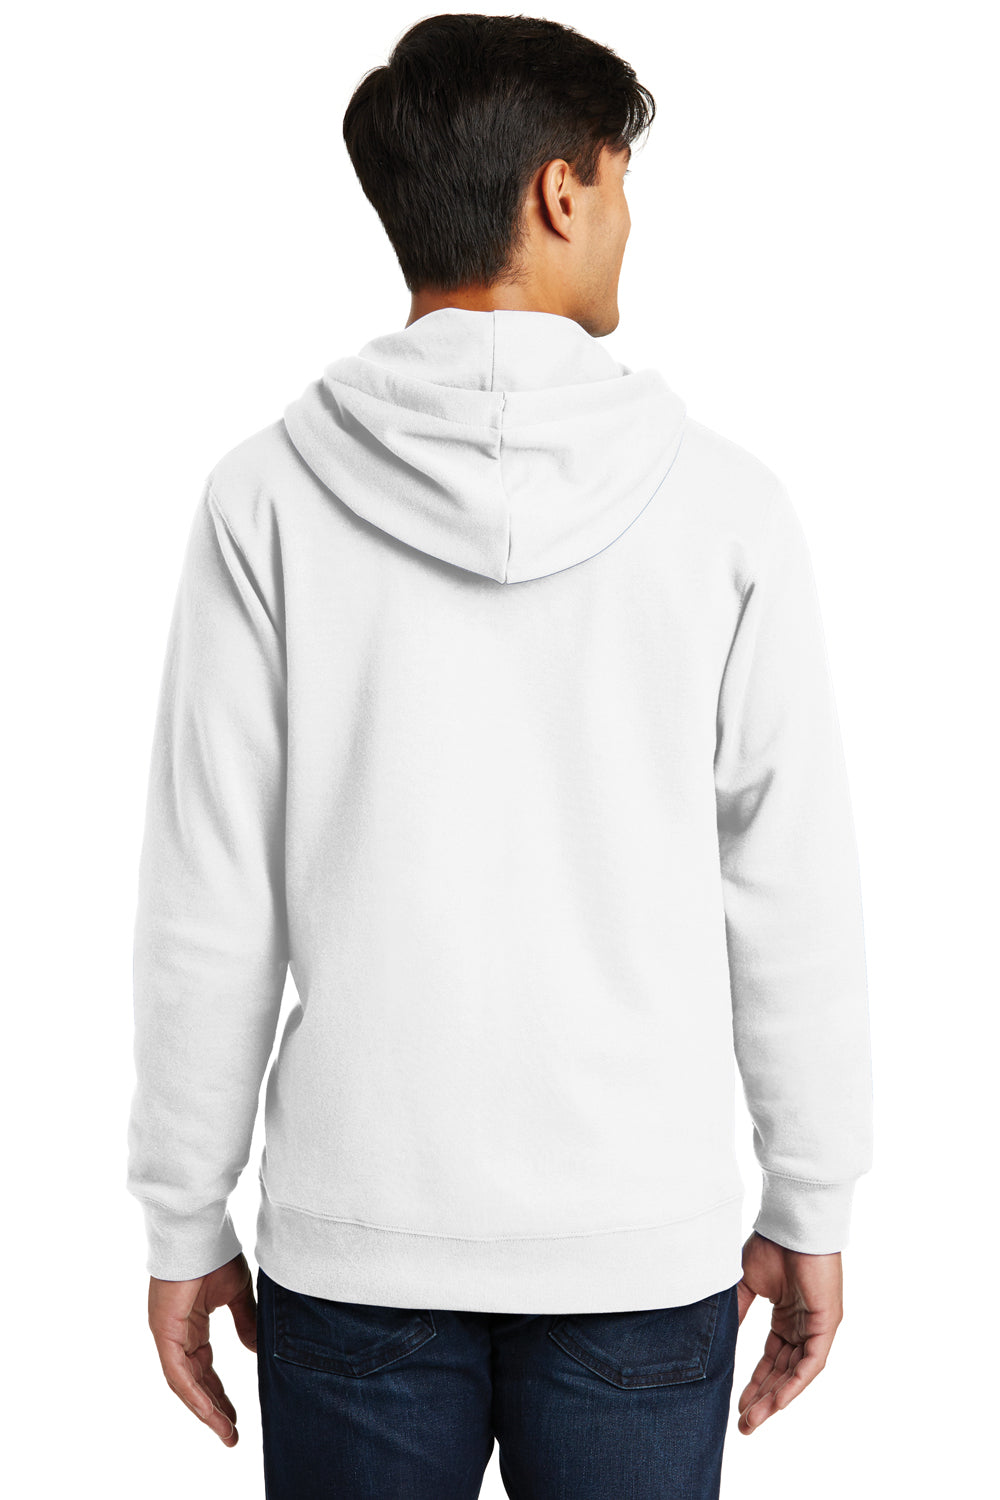 Port & Company PC850ZH Mens Fan Favorite Fleece Full Zip Hooded Sweatshirt Hoodie White Back